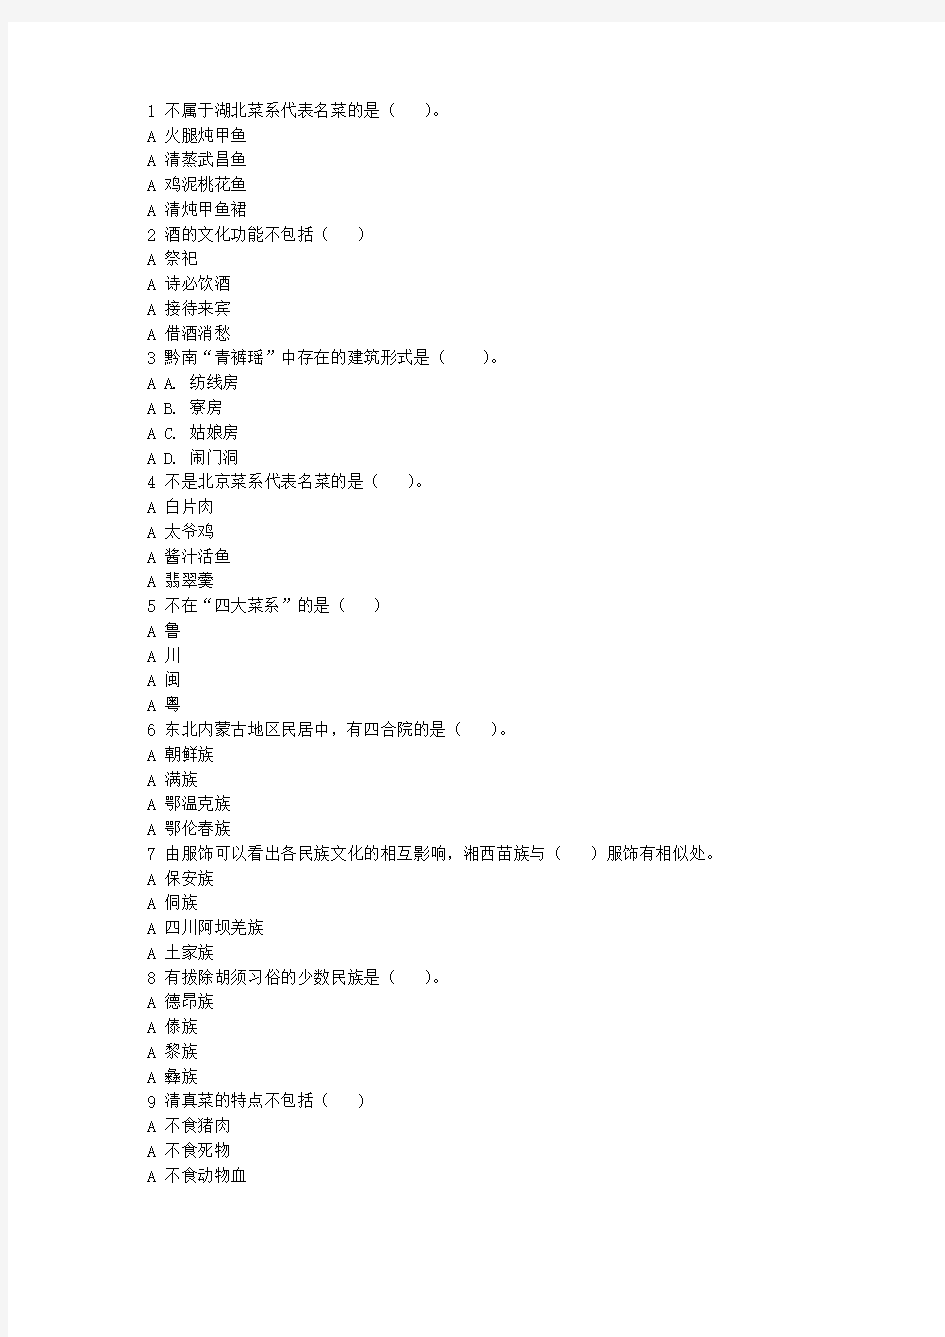 北语作业系统--17秋《中国古代物质文化》作业_4321资料